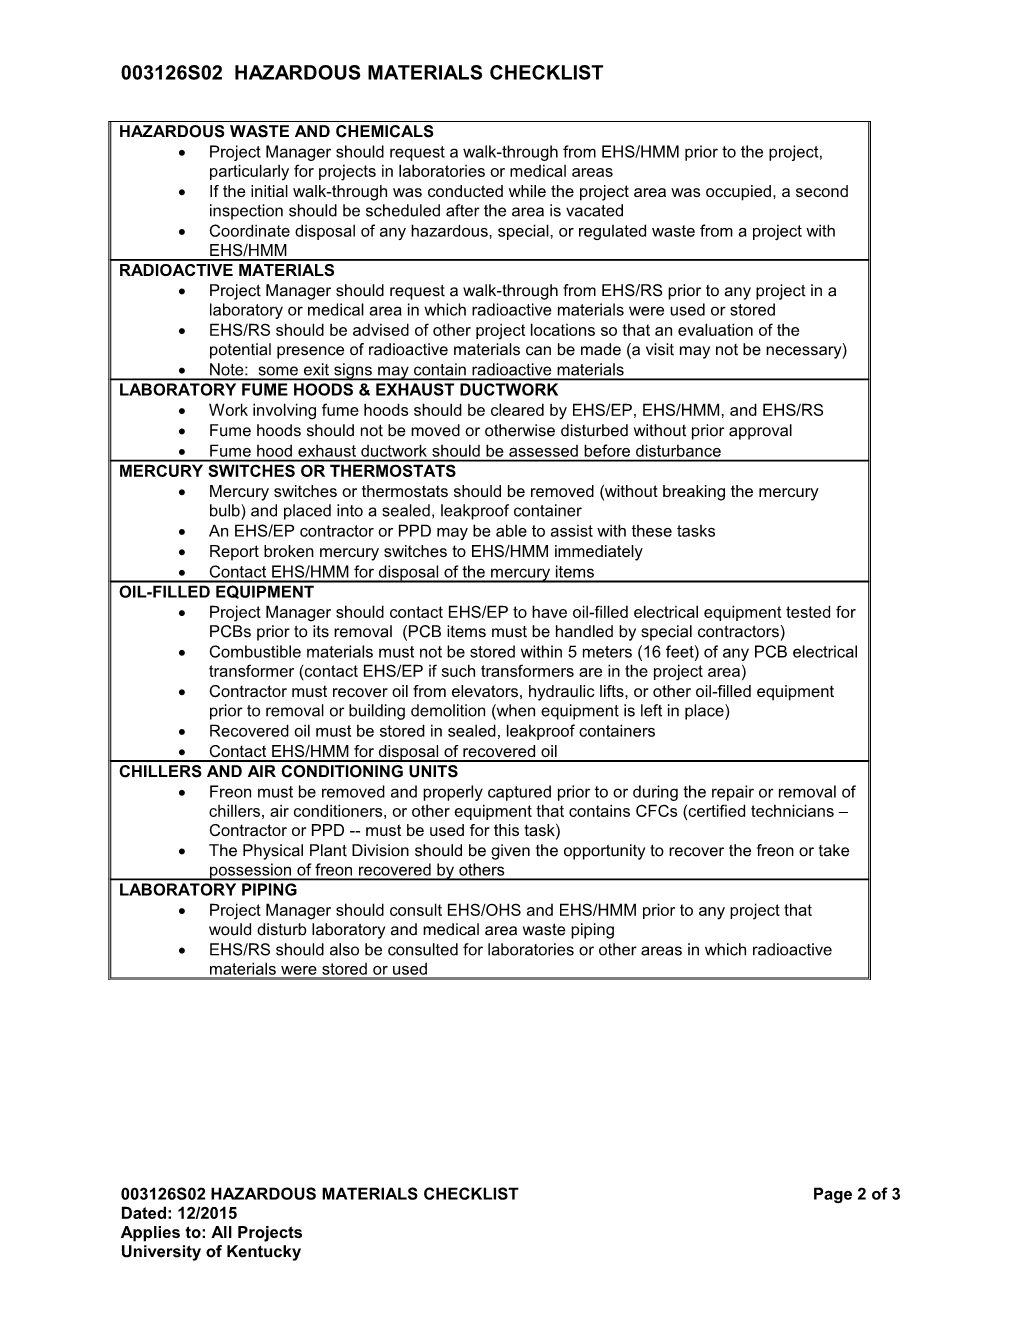 003126S02 Hazardous Materials Checklist